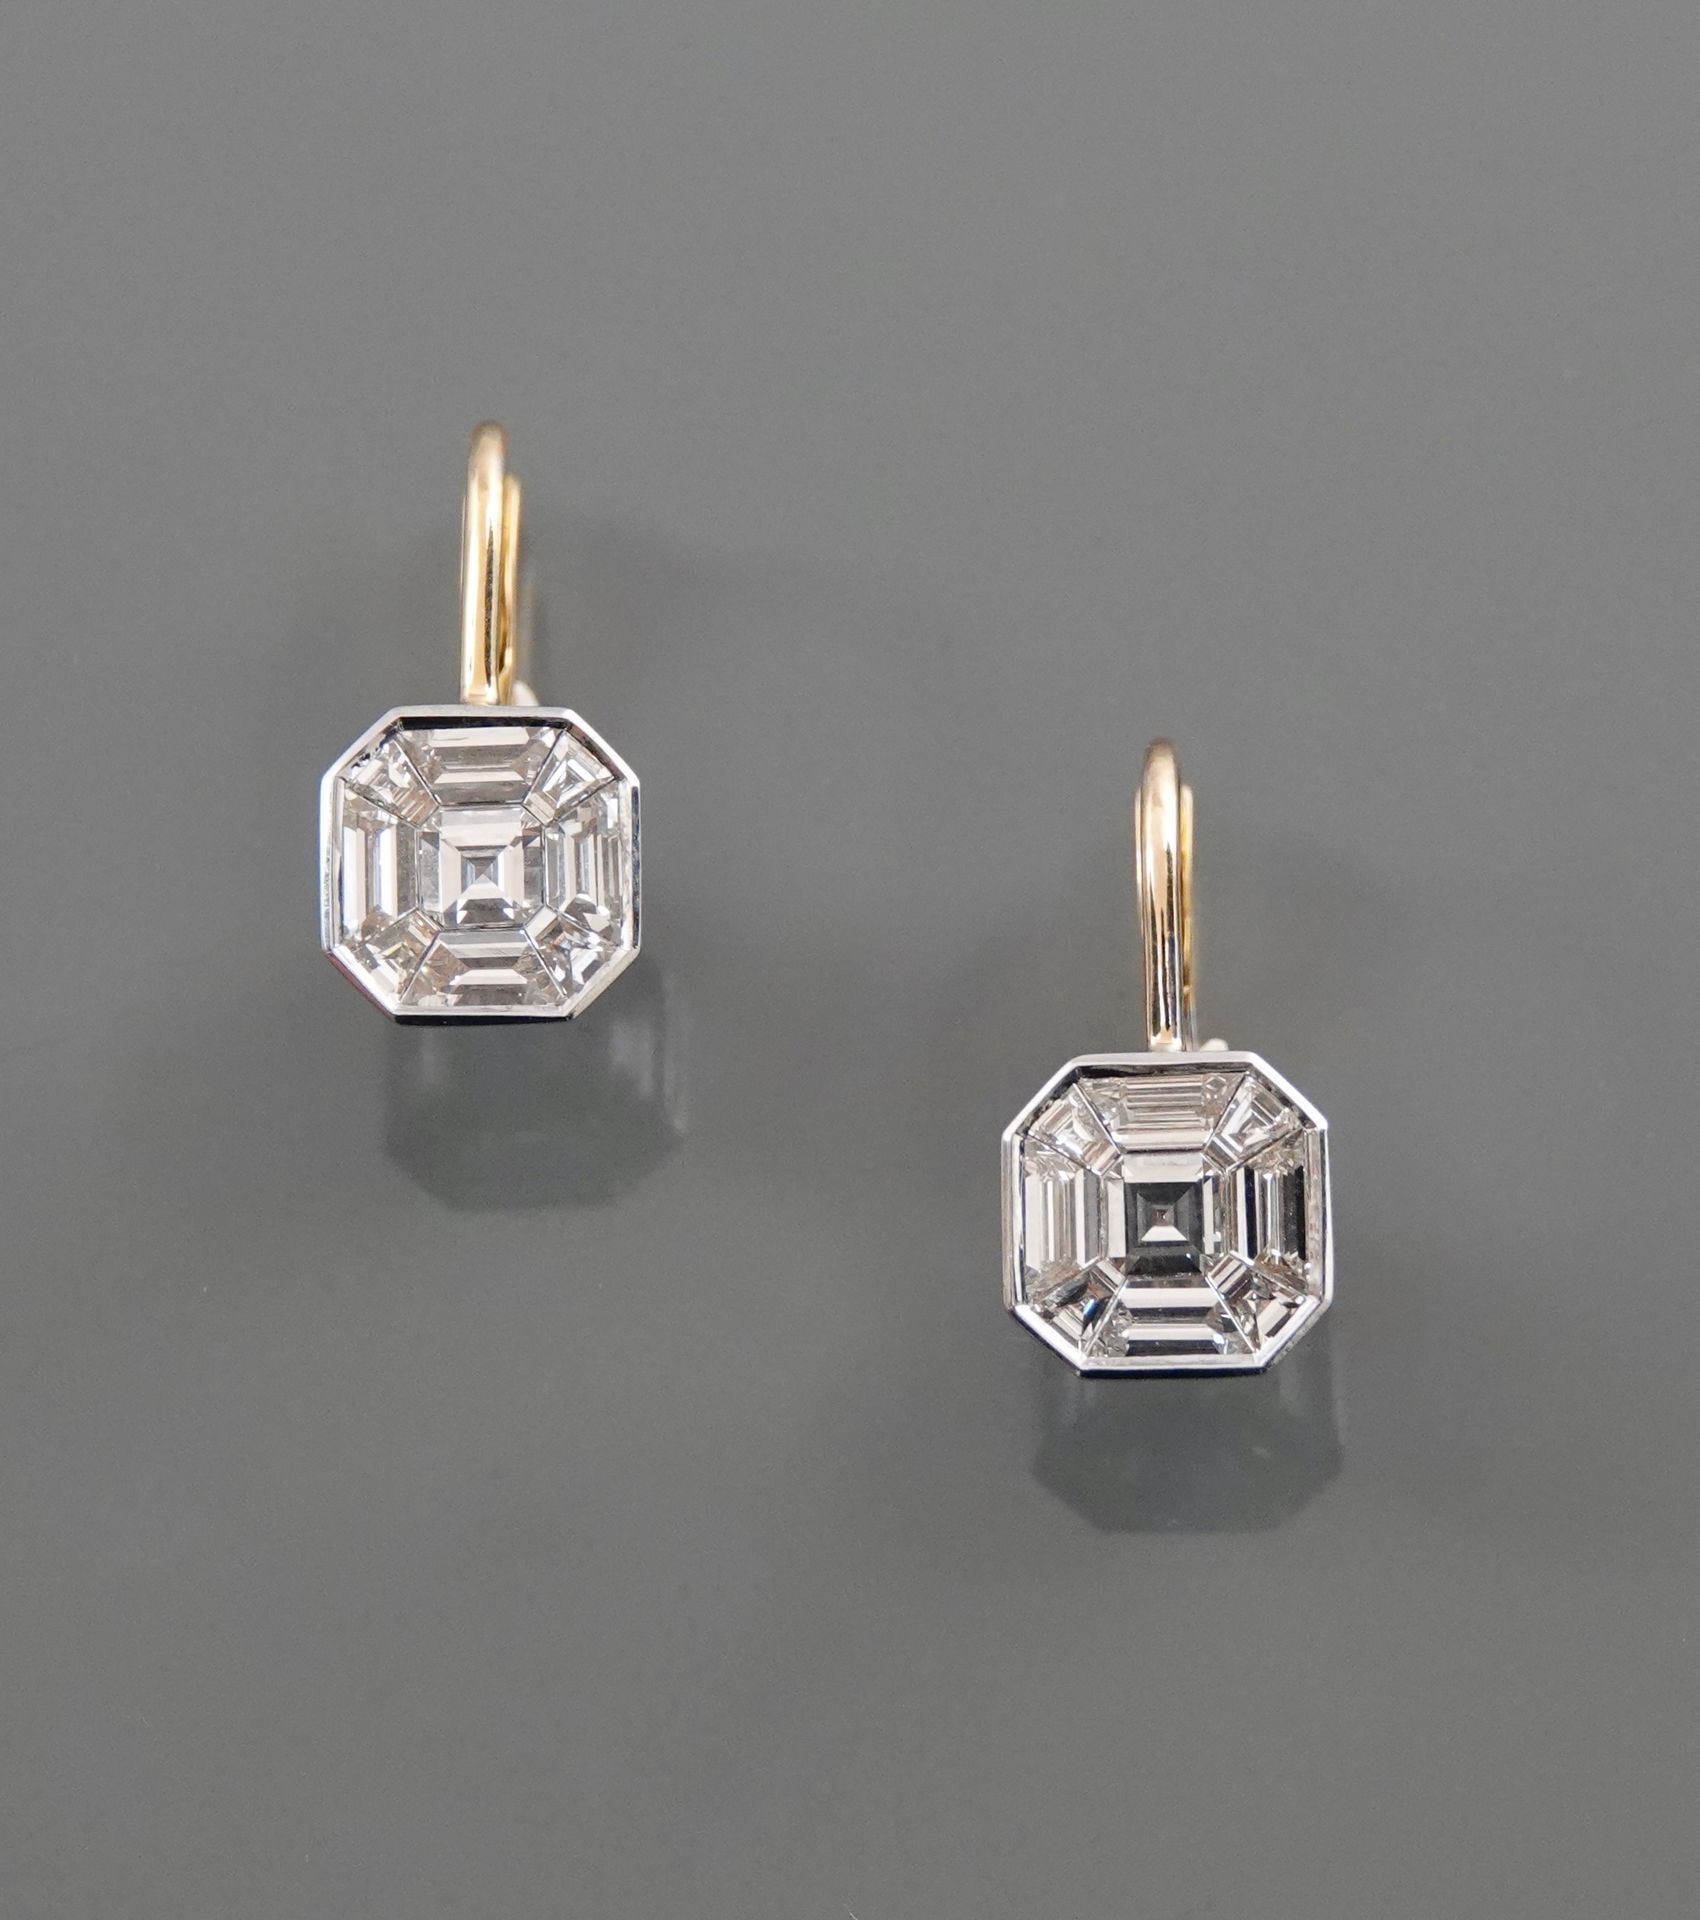 Null Dormeuses在两个黄金，750毫米，覆盖着长方形钻石，共约4克拉，长2厘米，重量：3.39克毛。